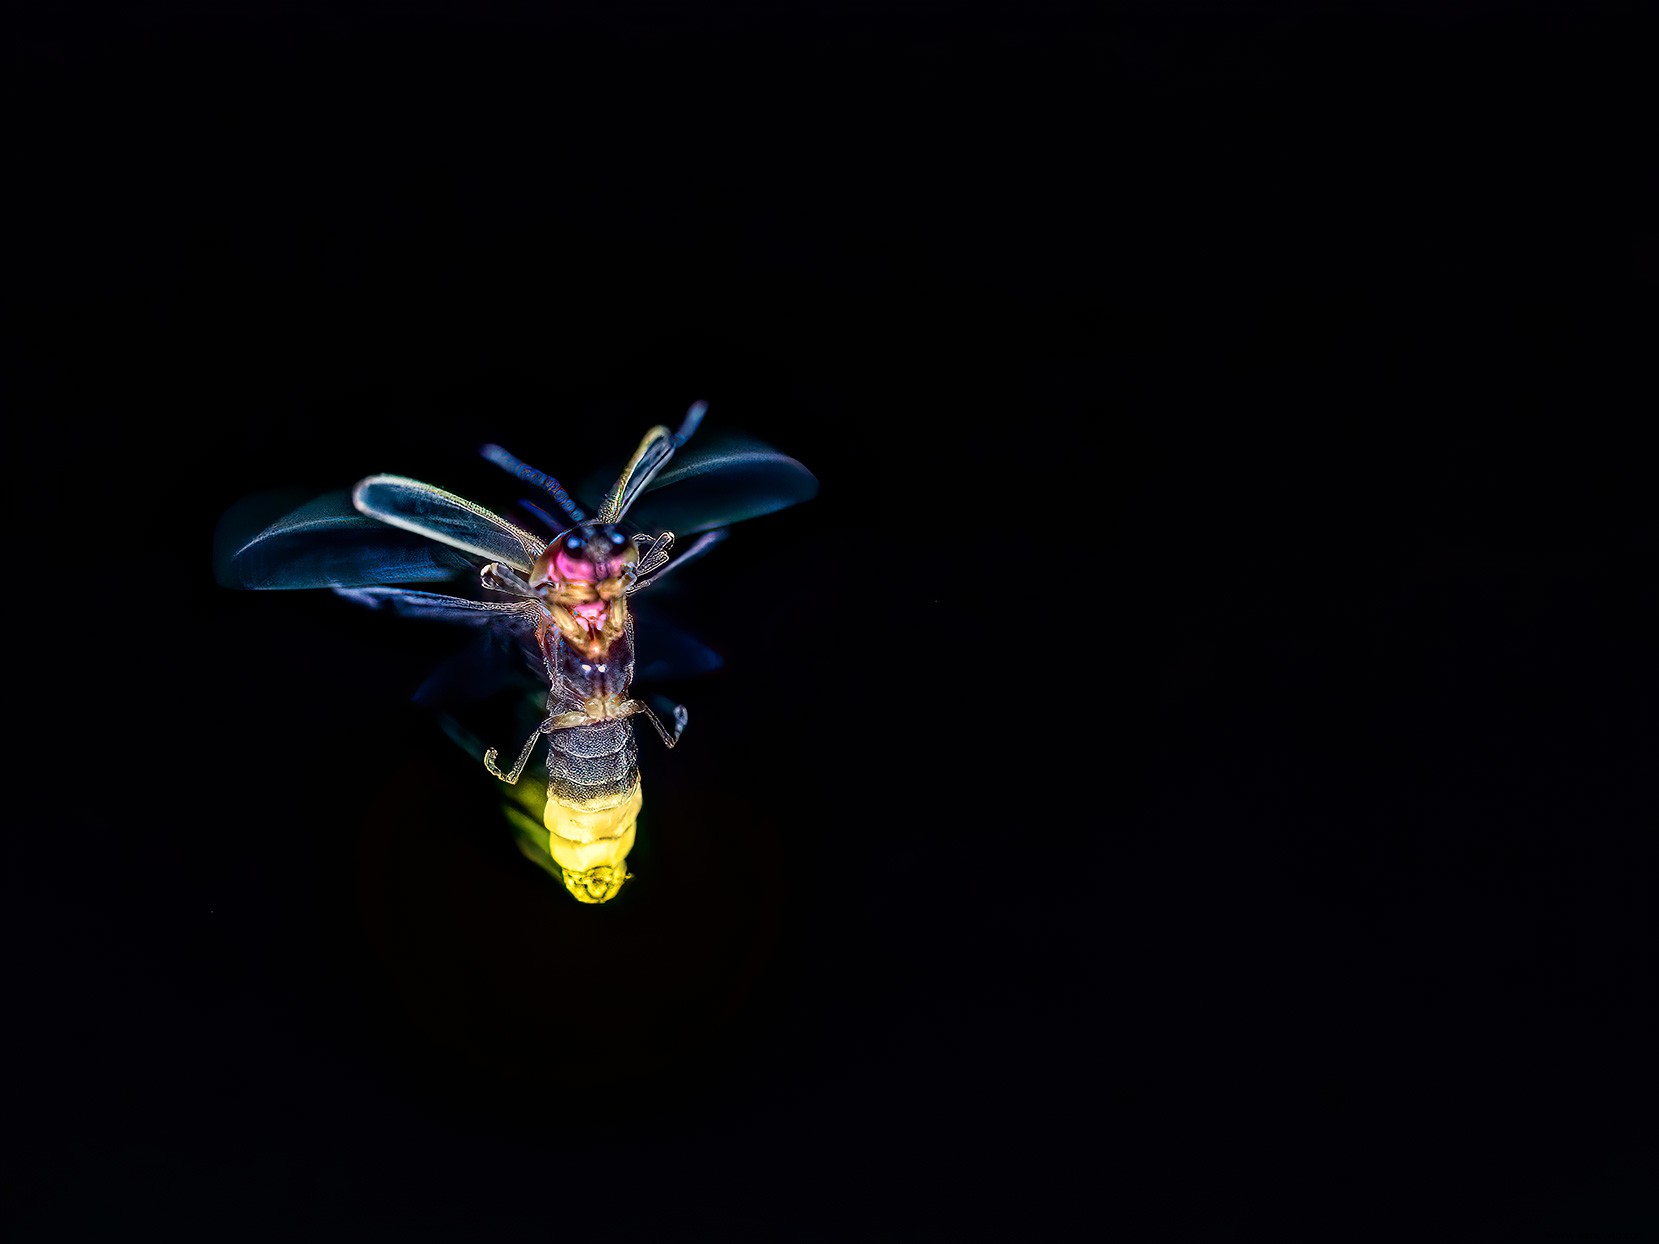 Ver luciérnagas este verano podría ayudar a los científicos a estudiar estos insectos fascinantes 